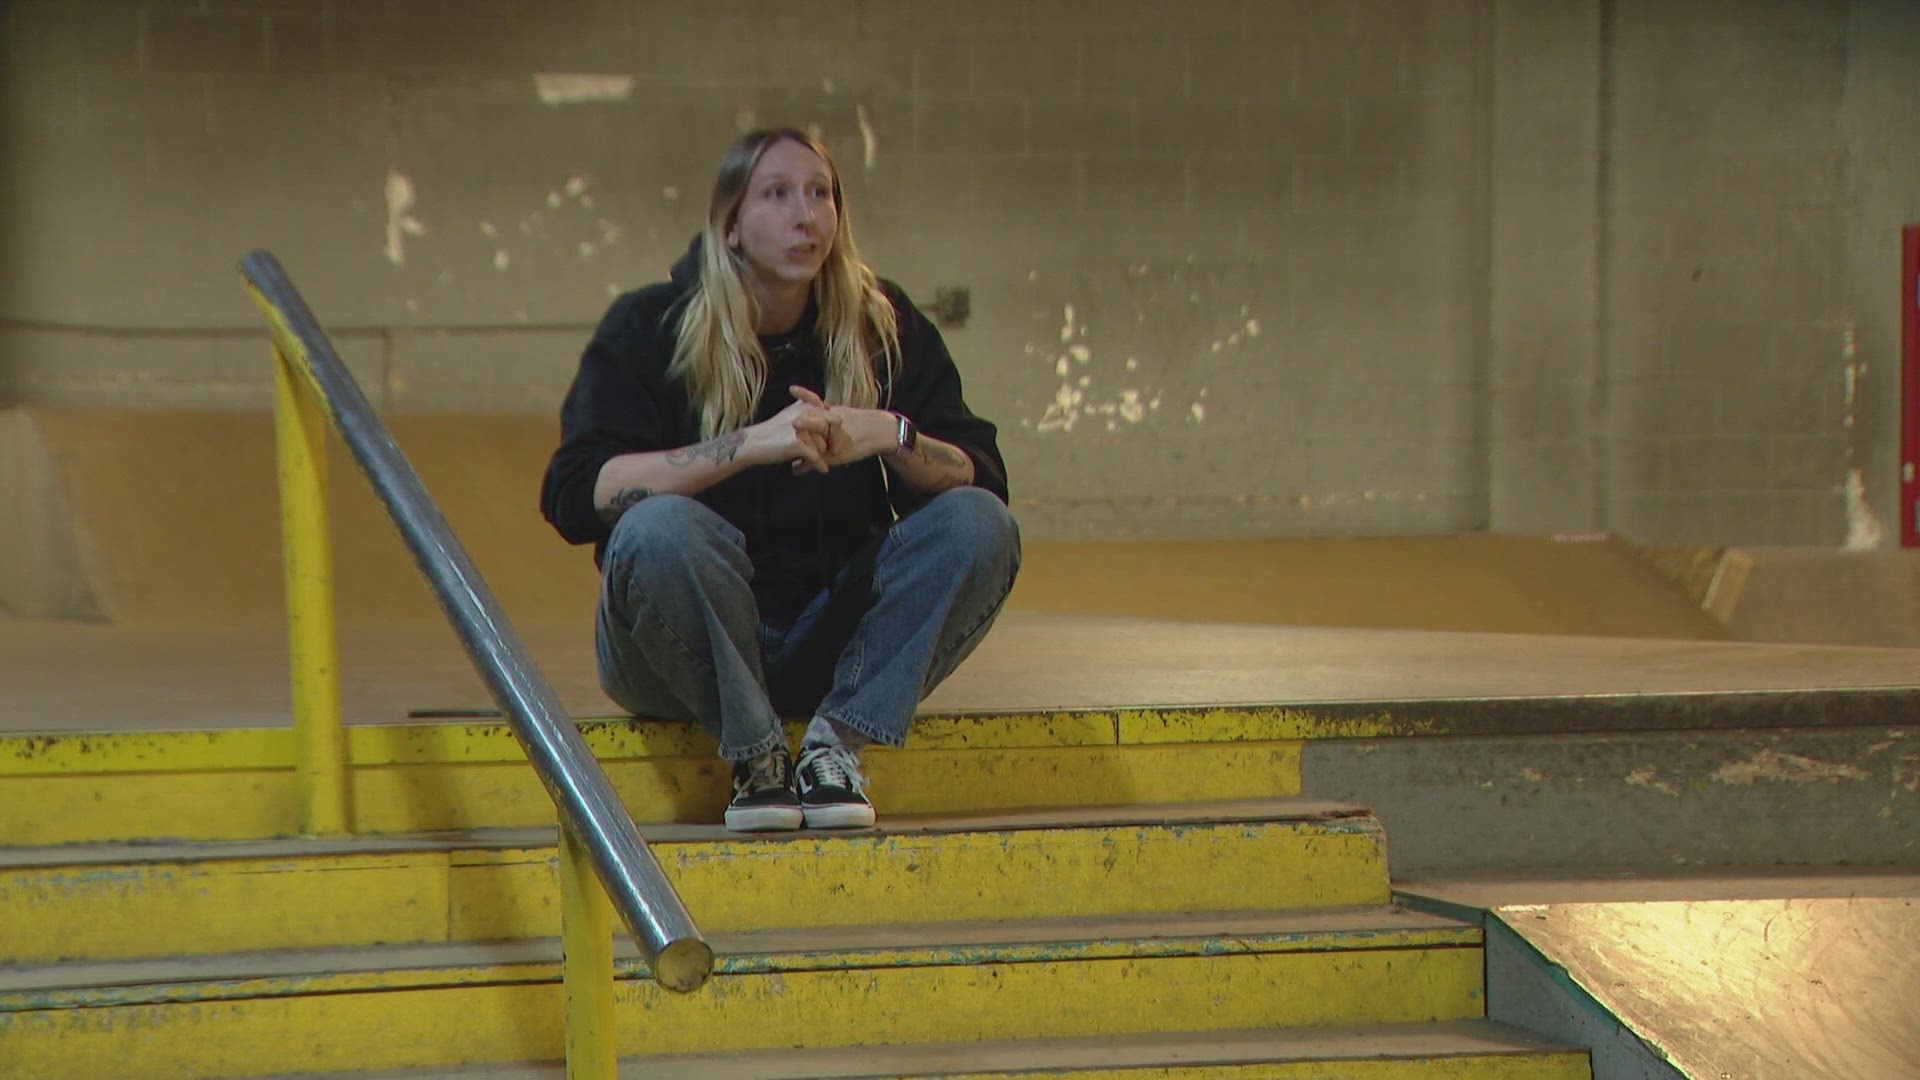 More Girls Are Joining Sport Of Skateboarding